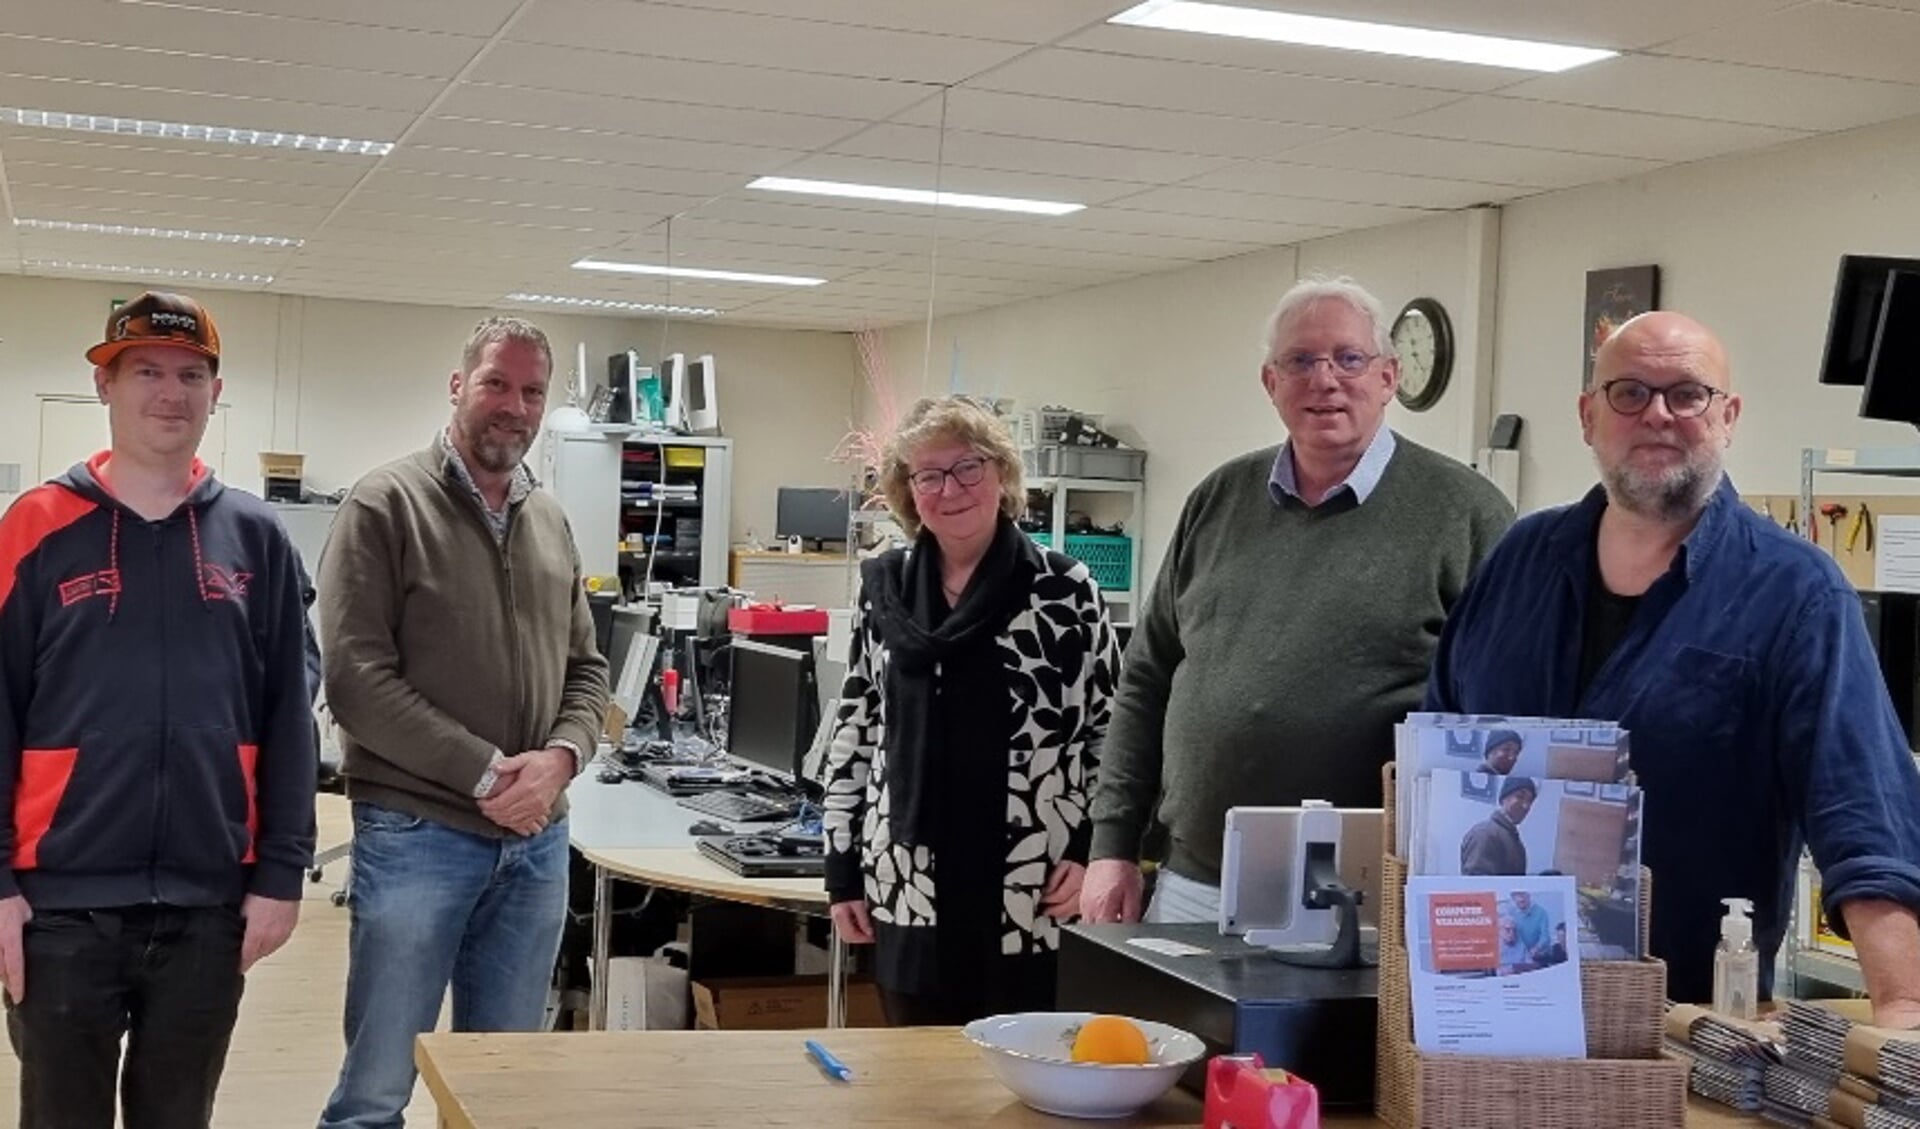 De fractieleden van de PvdA Midden-Groningen waren onder de indruk van het goede werk dat wordt verricht bij de Computerbank. (eigen foto)